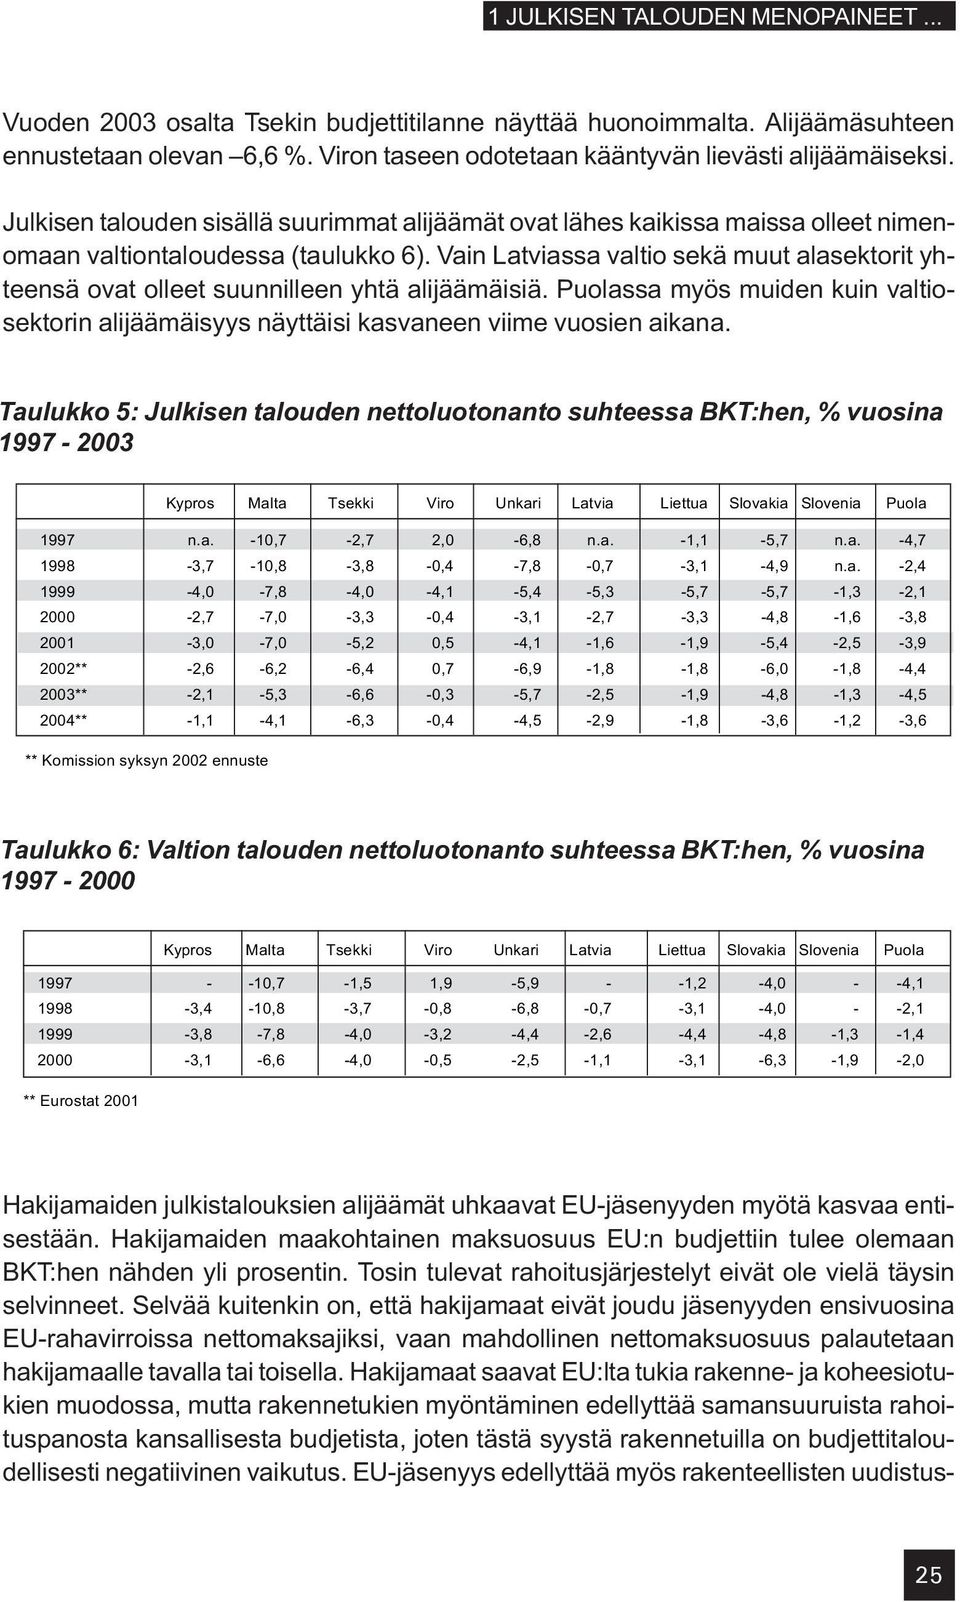 Vain Latviassa valtio sekä muut alasektorit yhteensä ovat olleet suunnilleen yhtä alijäämäisiä. Puolassa myös muiden kuin valtiosektorin alijäämäisyys näyttäisi kasvaneen viime vuosien aikana.